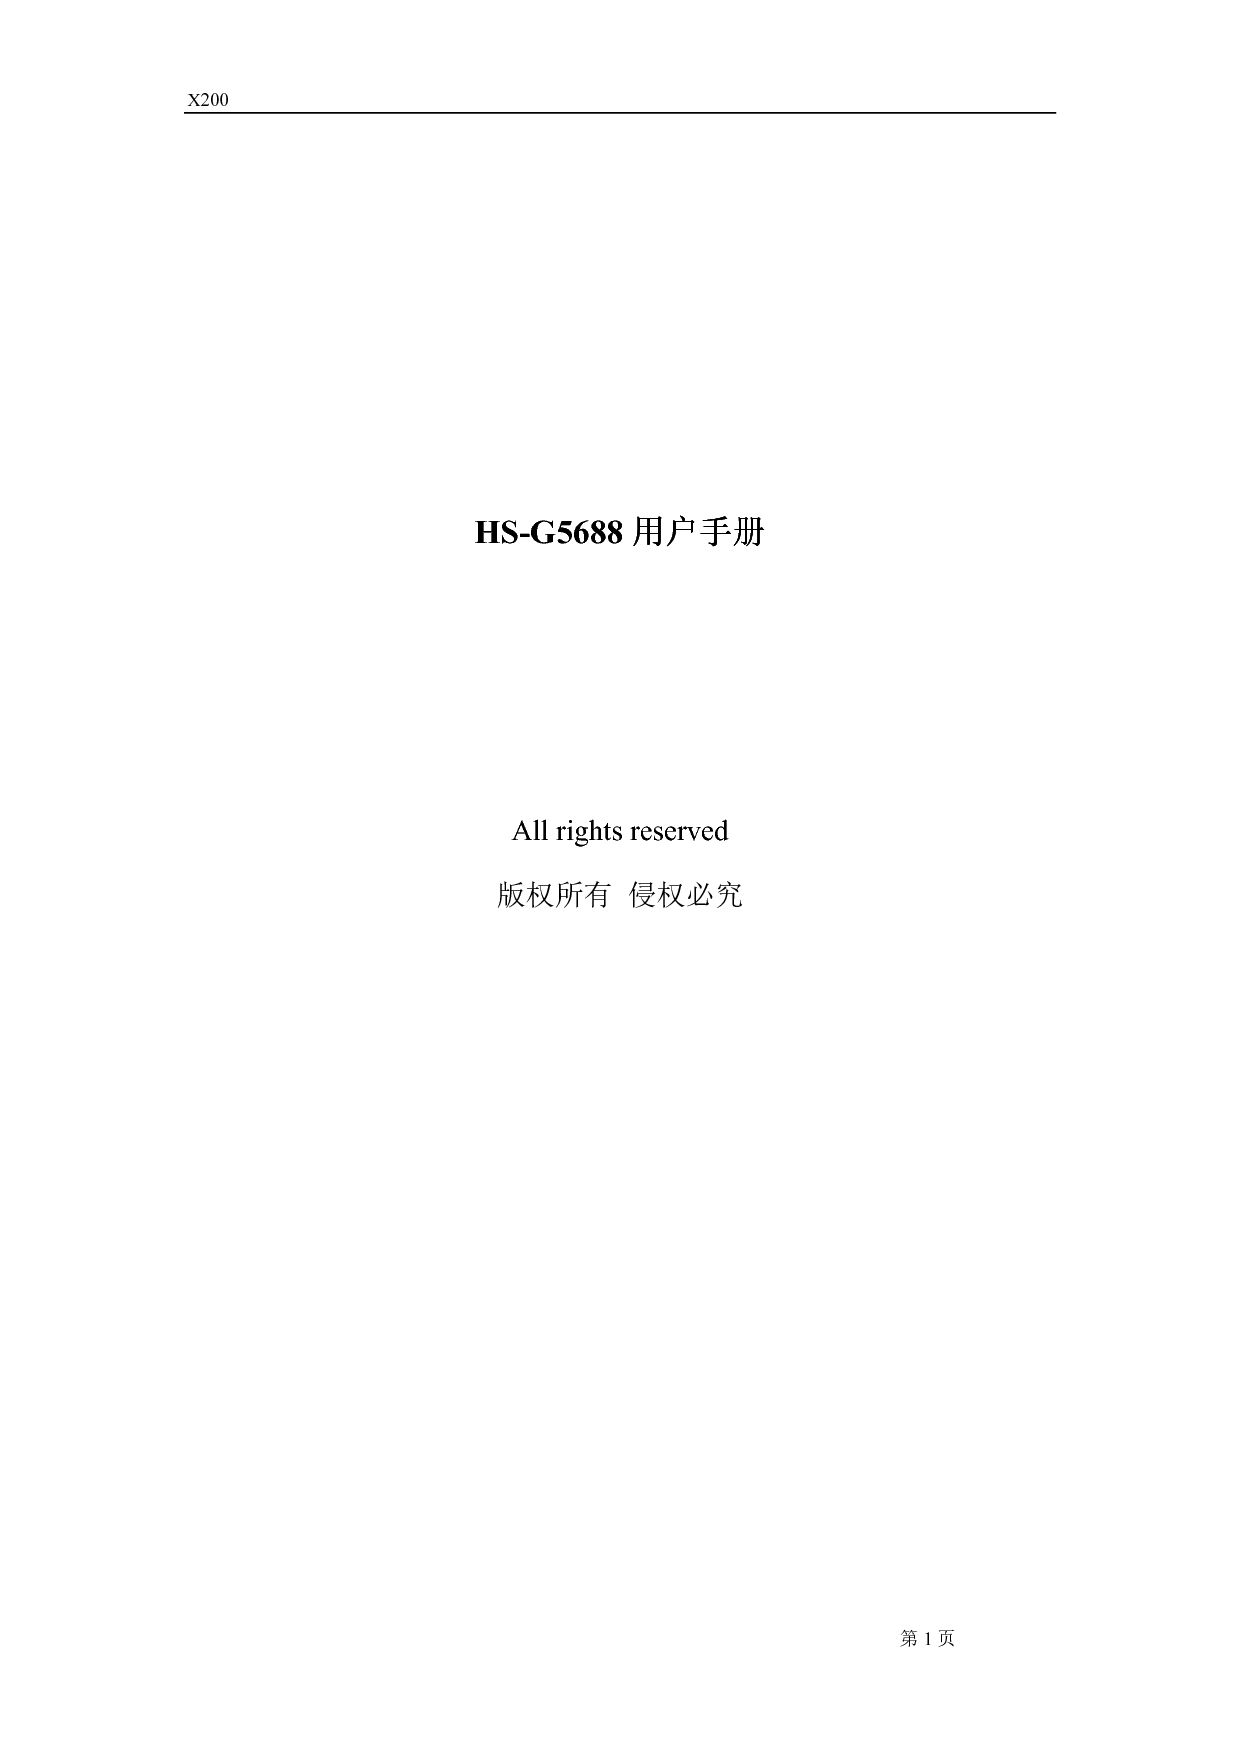 海信 Hisense HS-G5688 用户指南 封面